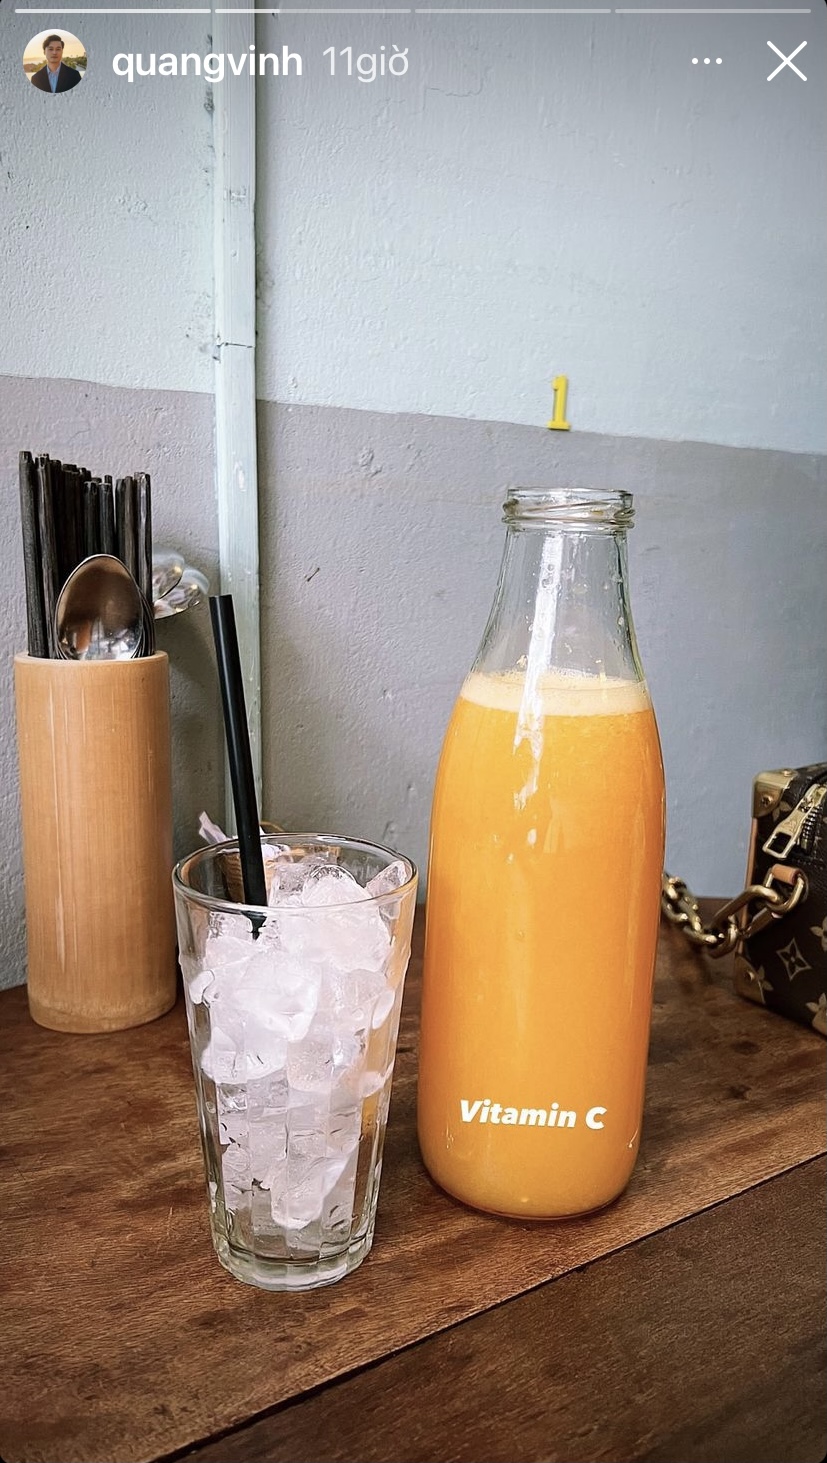 Ca sĩ Quang Vinh hôm nay đã bổ sung vitamin C bằng một chai nước cam 'siêu to'.